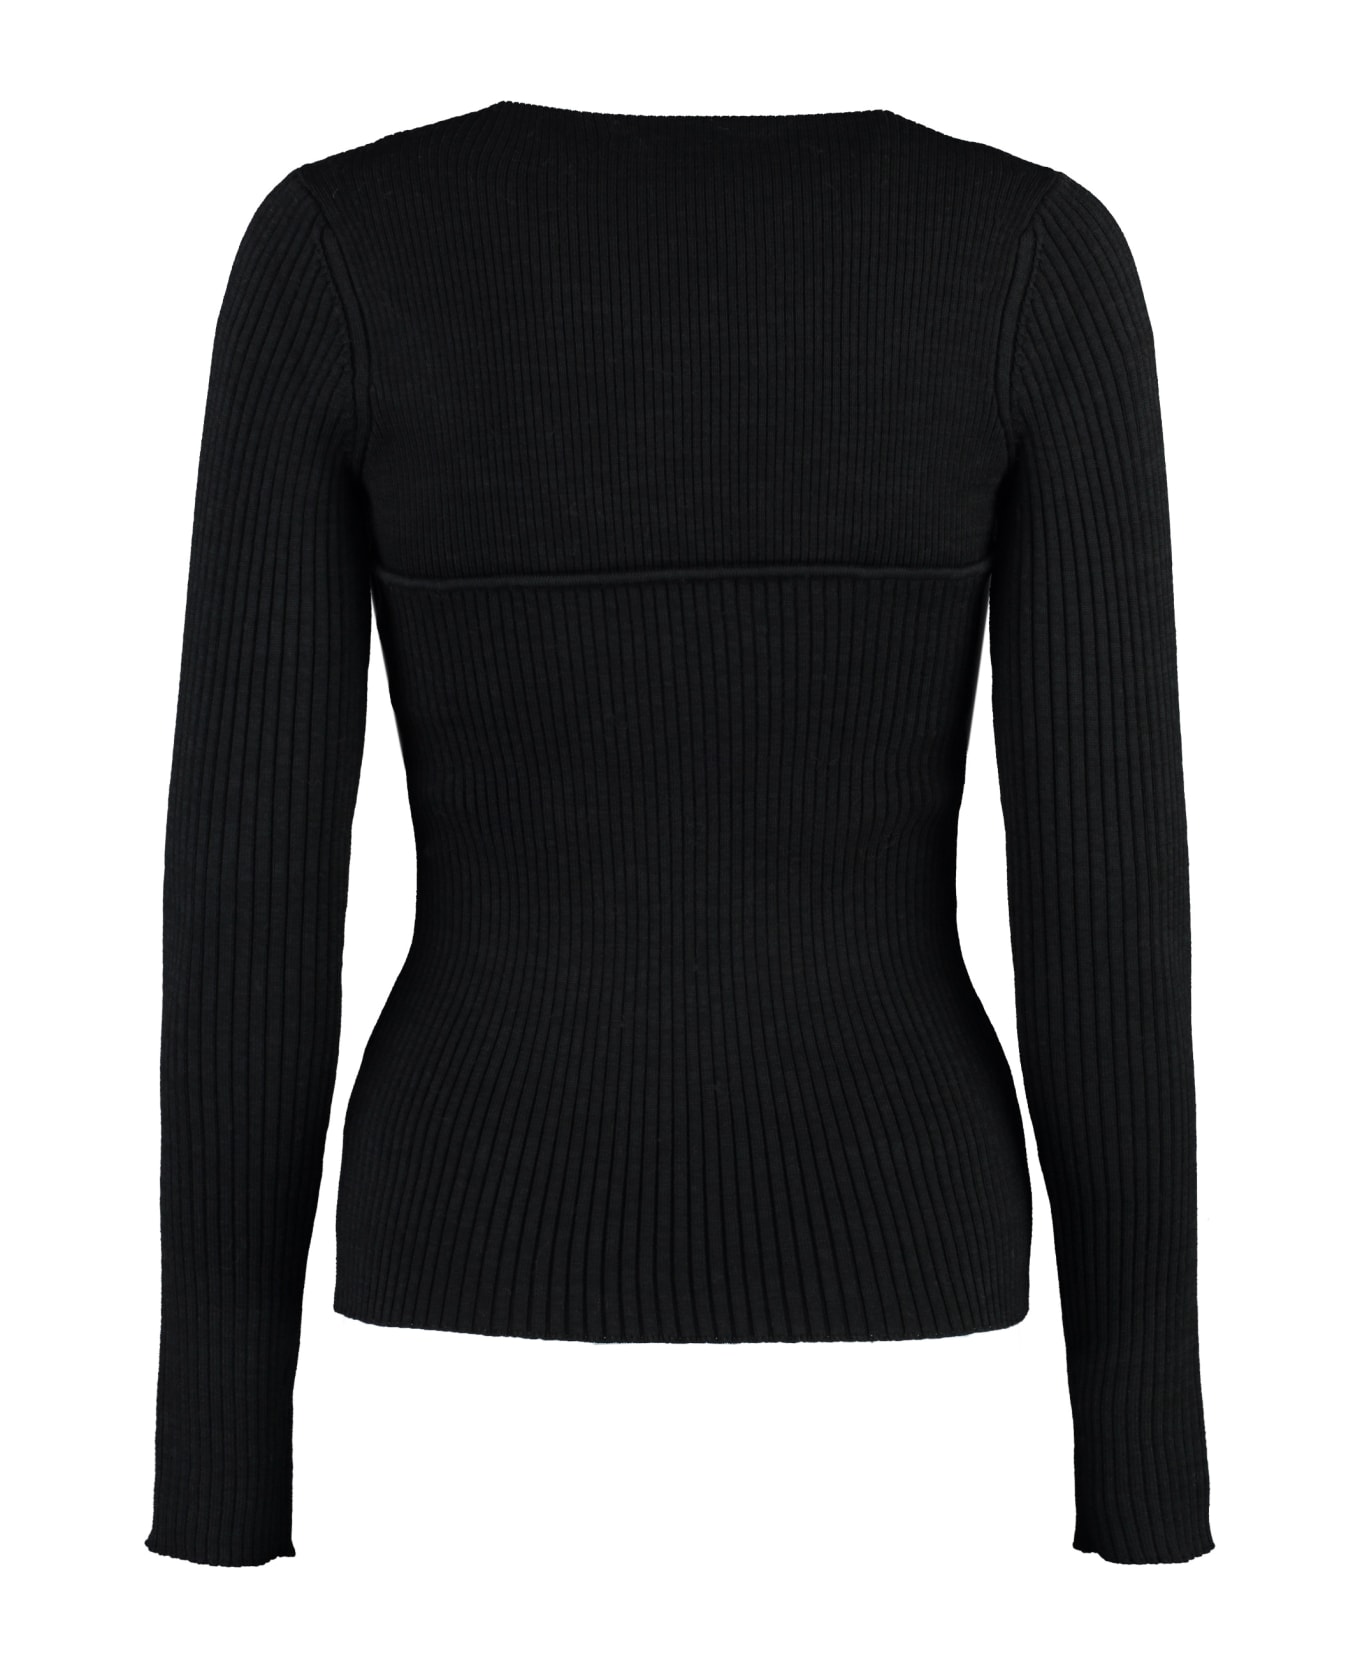 Isabel Marant Zilyae Merino Wool Sweater - black